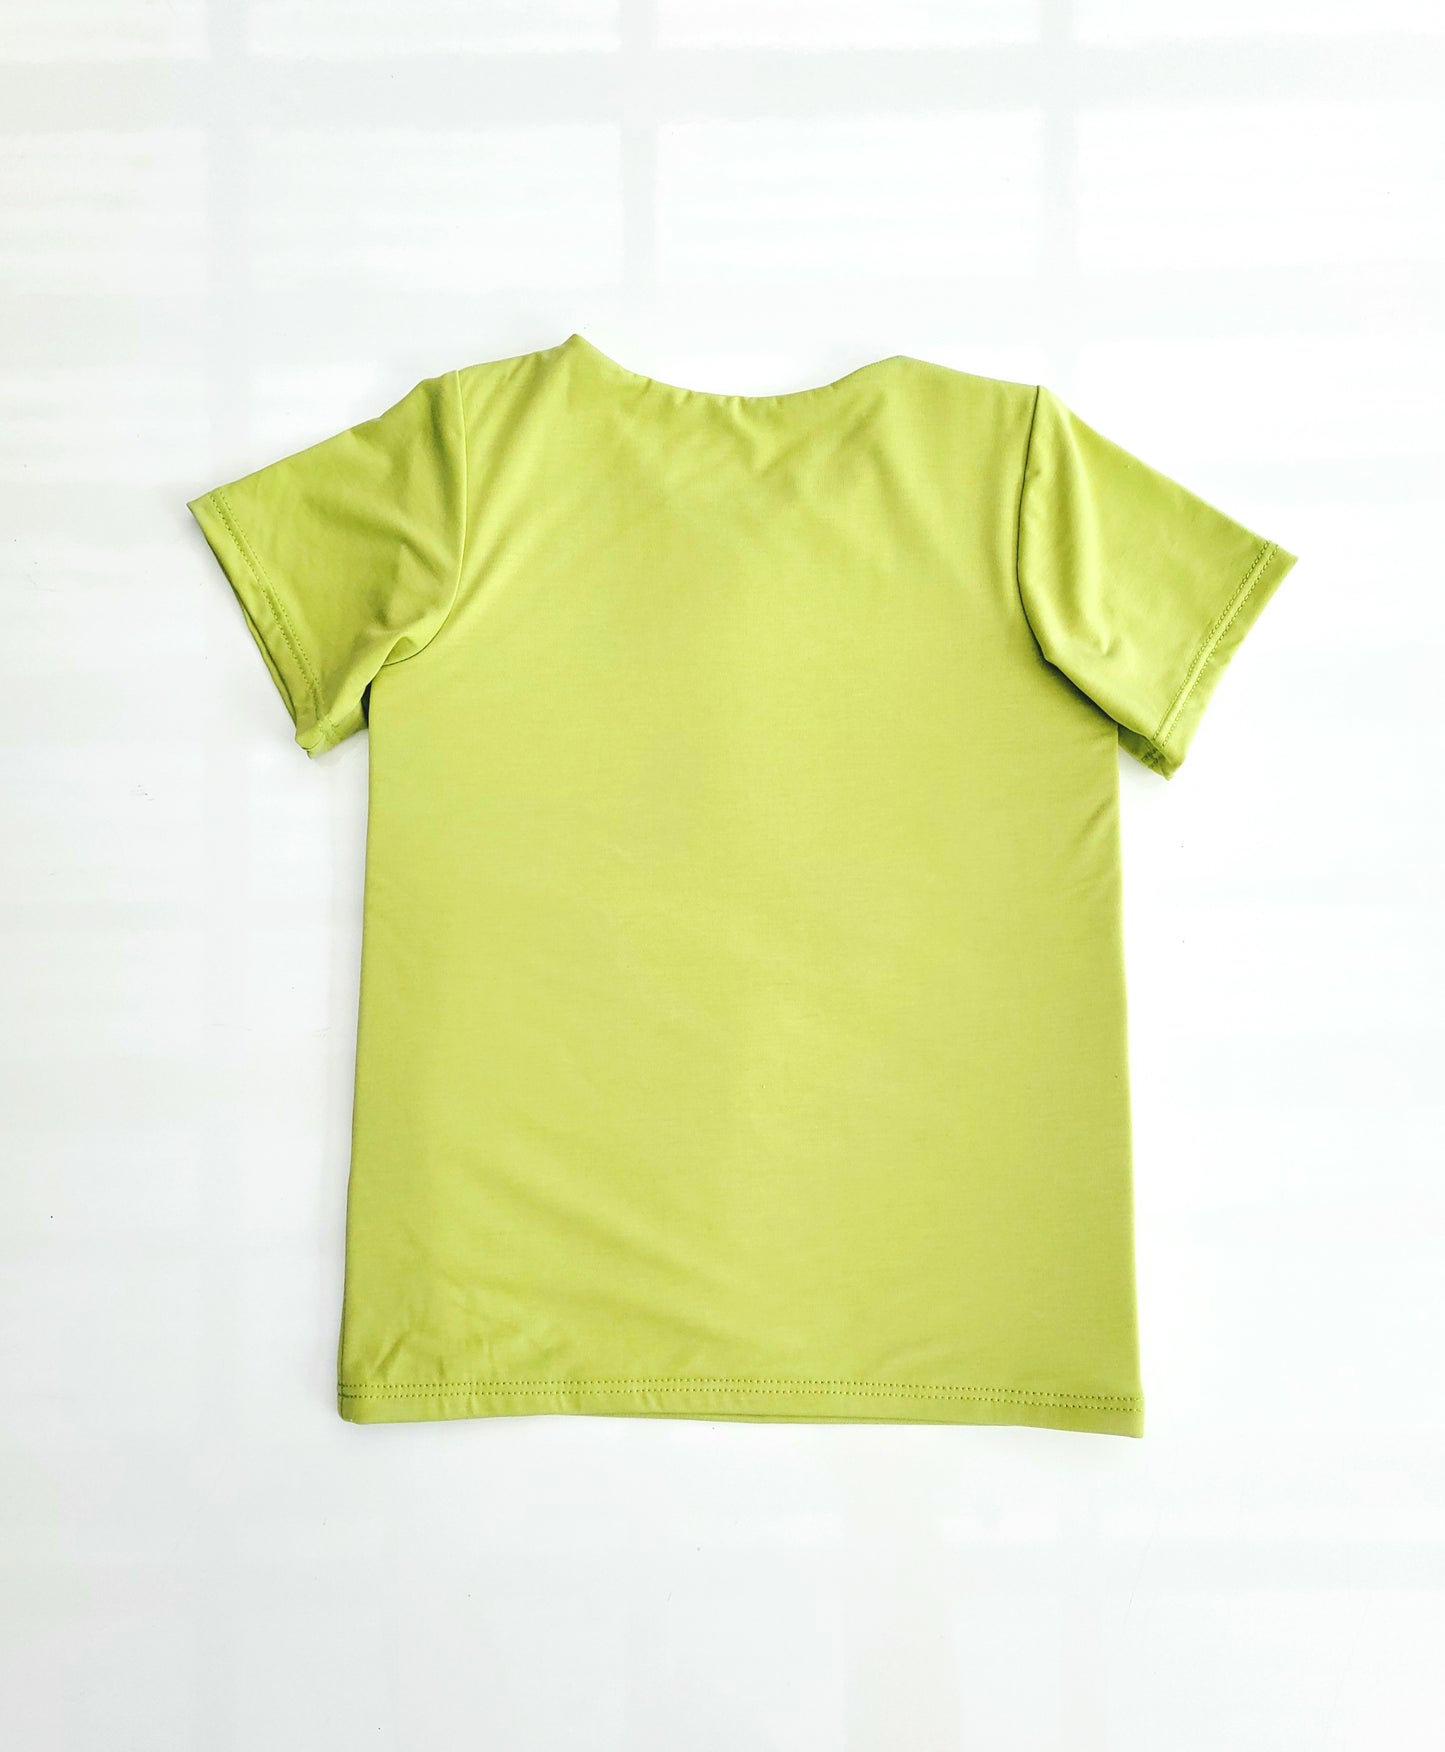 Eve Fleur - EMF Shielding Kids Tee Shirt - Lime - Schild